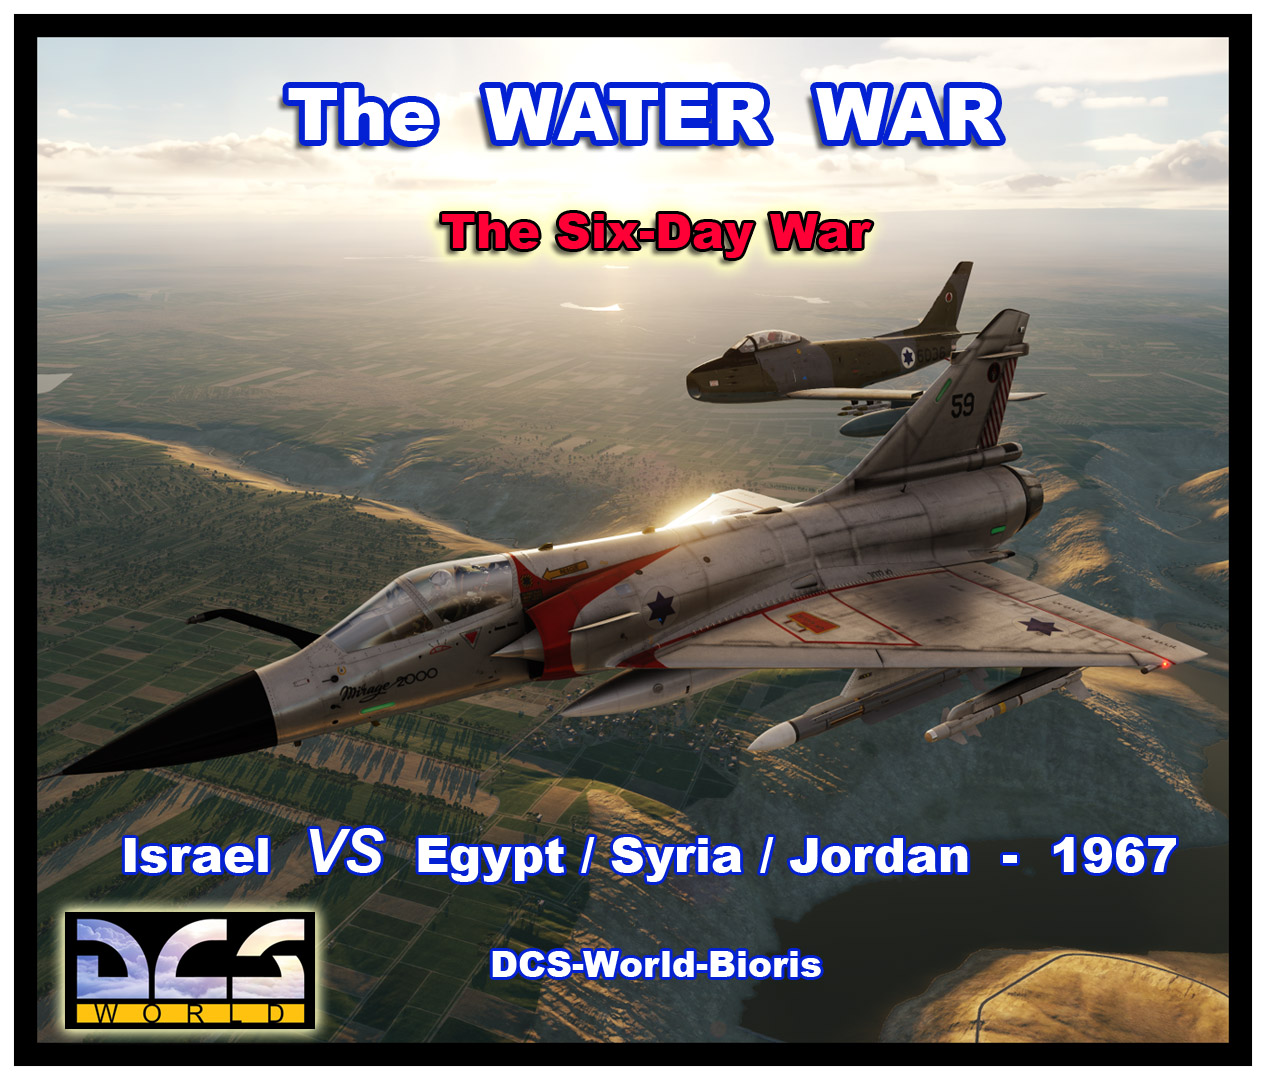 Six-Day-War - WATER WAR -  Israel 1967 - M-2000 / F-86 Sabre - SINAI - English Version